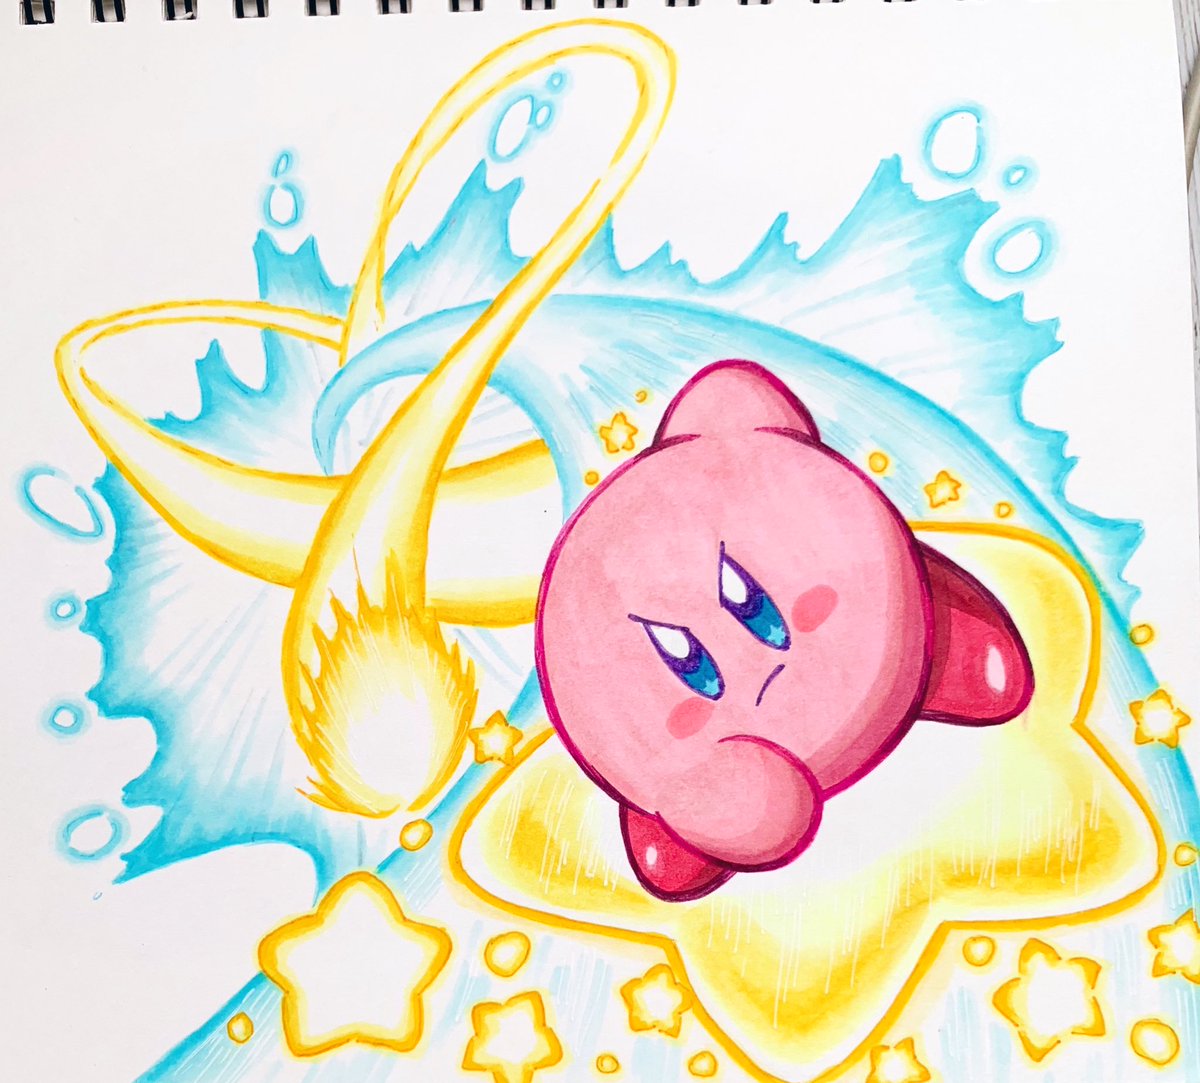 あら カービィ 在 Twitter 上 強くてかっこいい Kirby カービィ Illust イラスト T Co Umh9bx9n3n Twitter